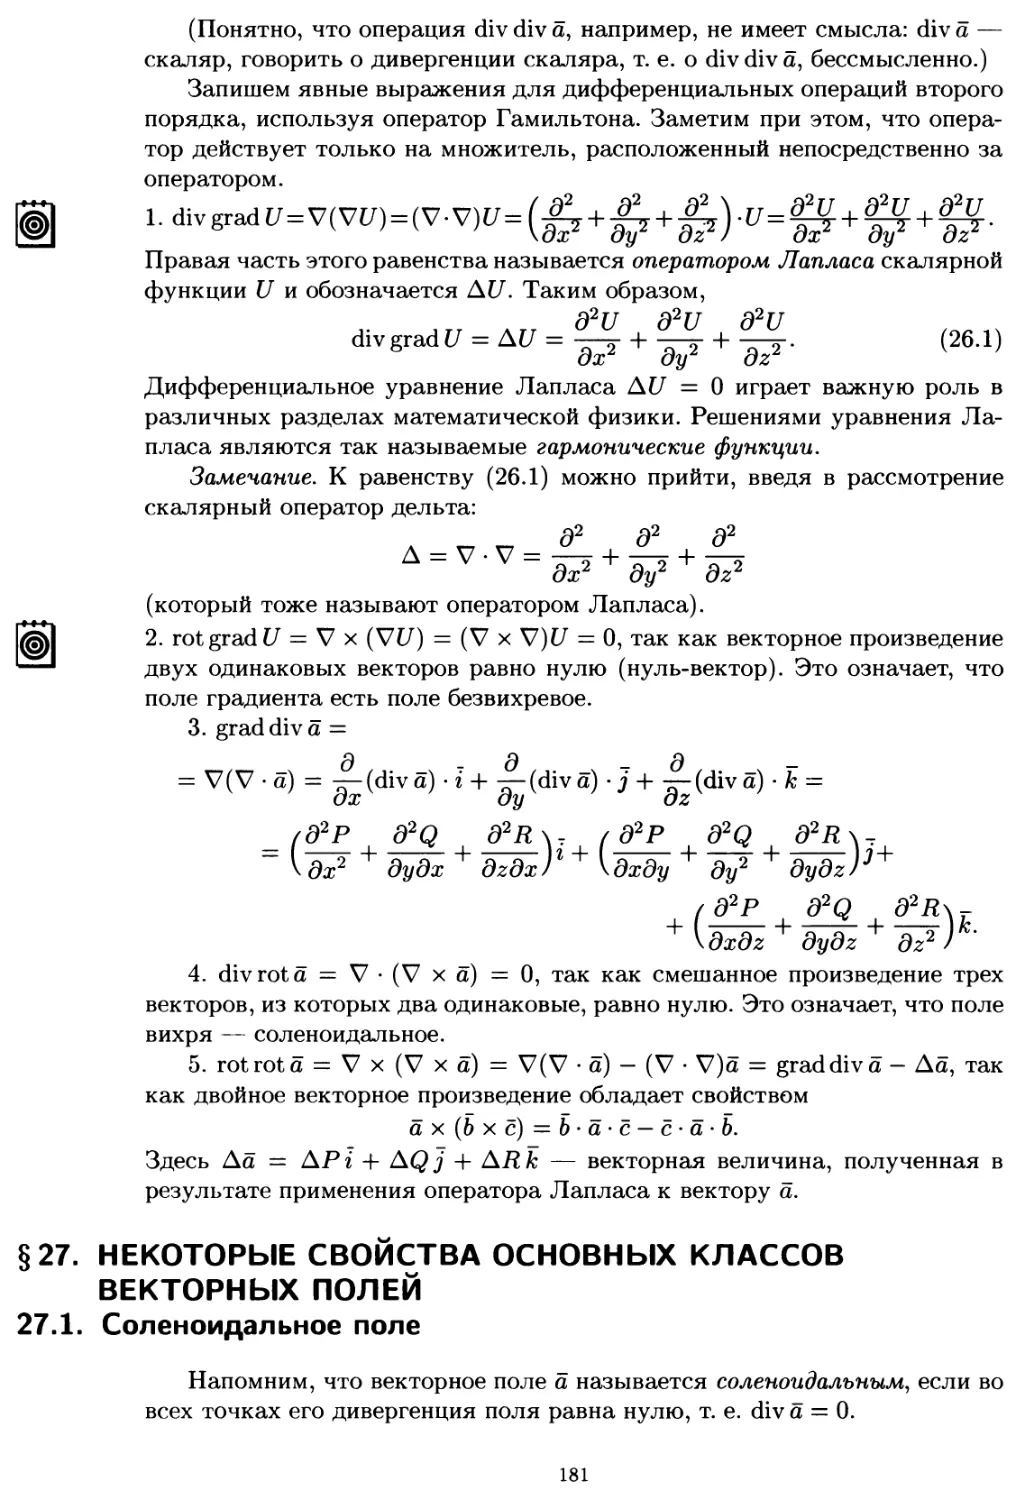 §27. Некоторые свойства основных классов векторных полей